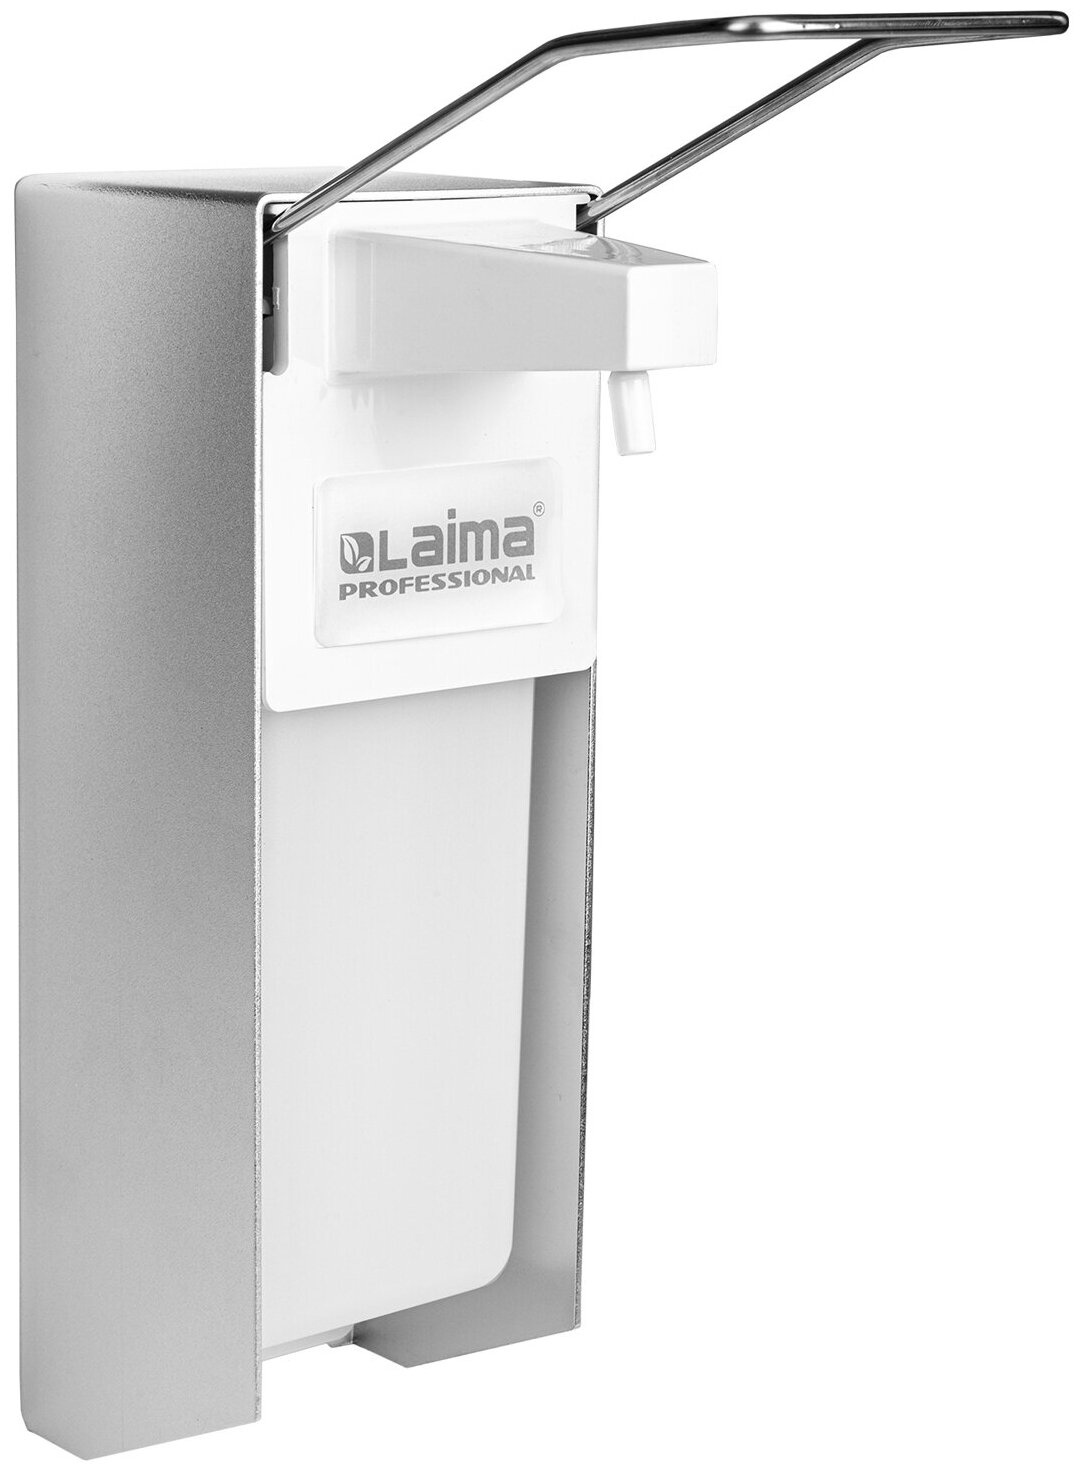 Дозатор  для дезинфицирующих средств Laima 605707, белый/серебристый